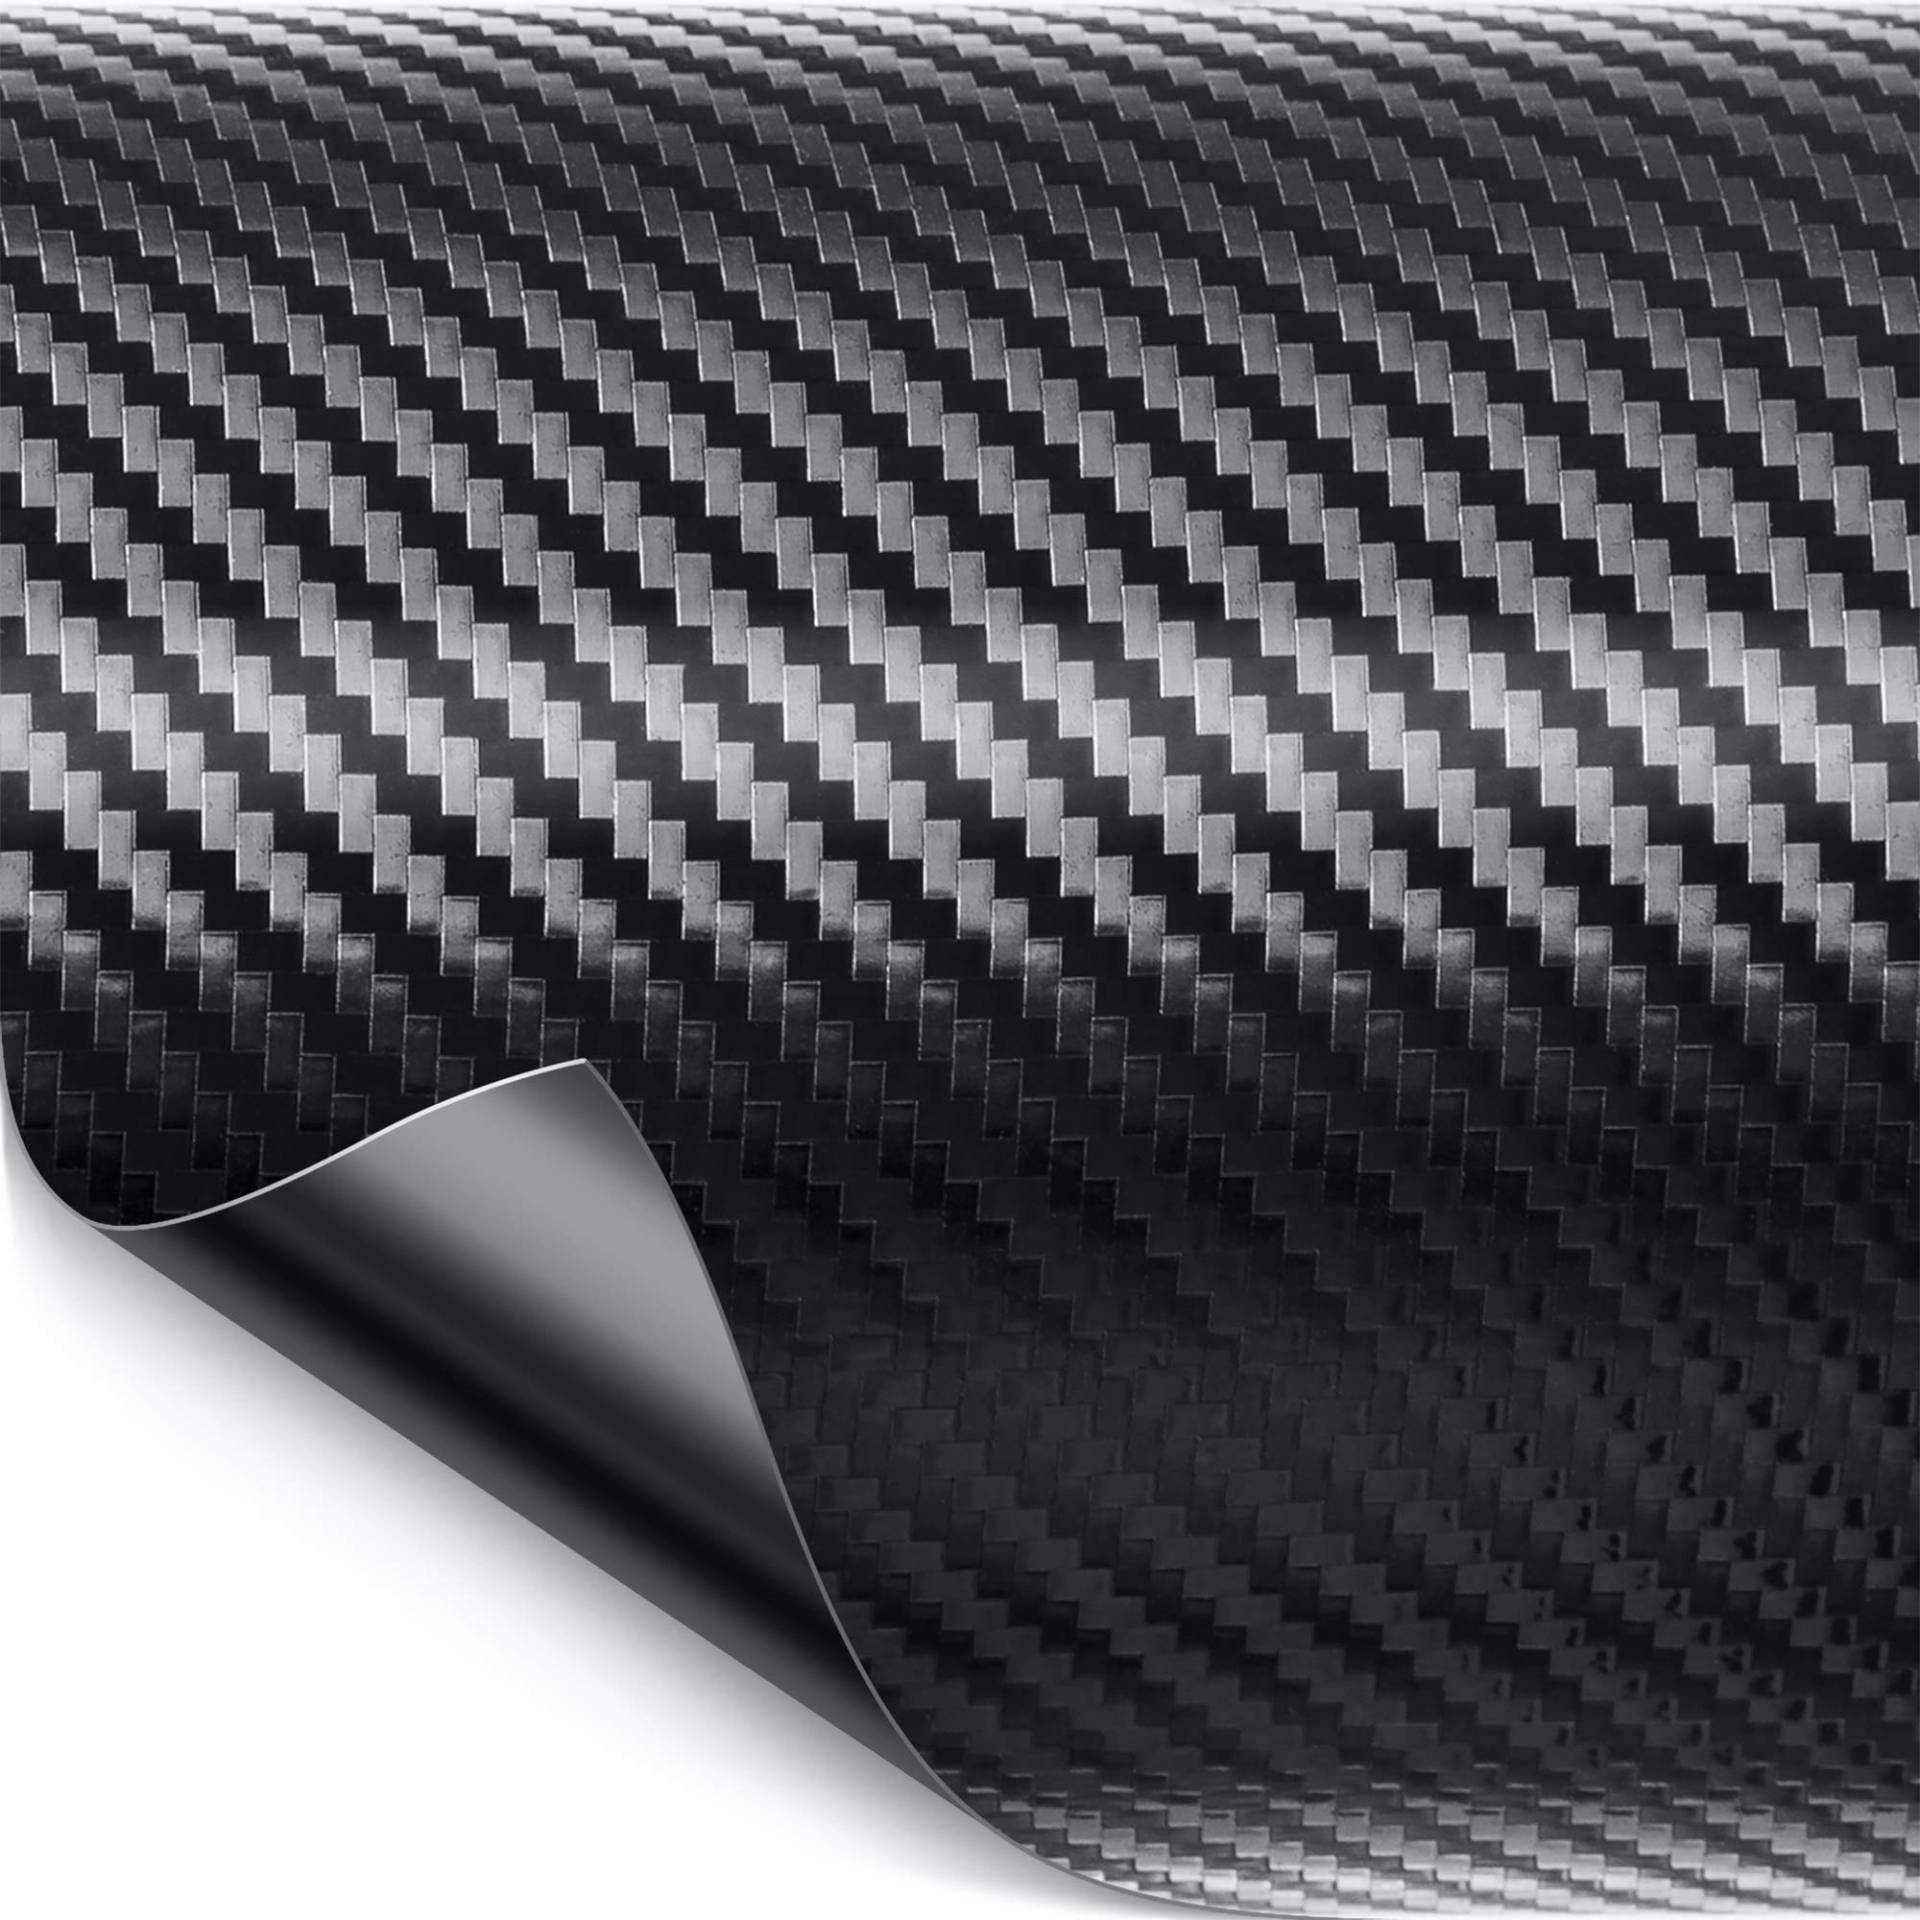 Luxshield Carbon Folie 30x100cm für Auto, Motorrad, Bike - selbstklebend, Meterware aus DE von Luxshield